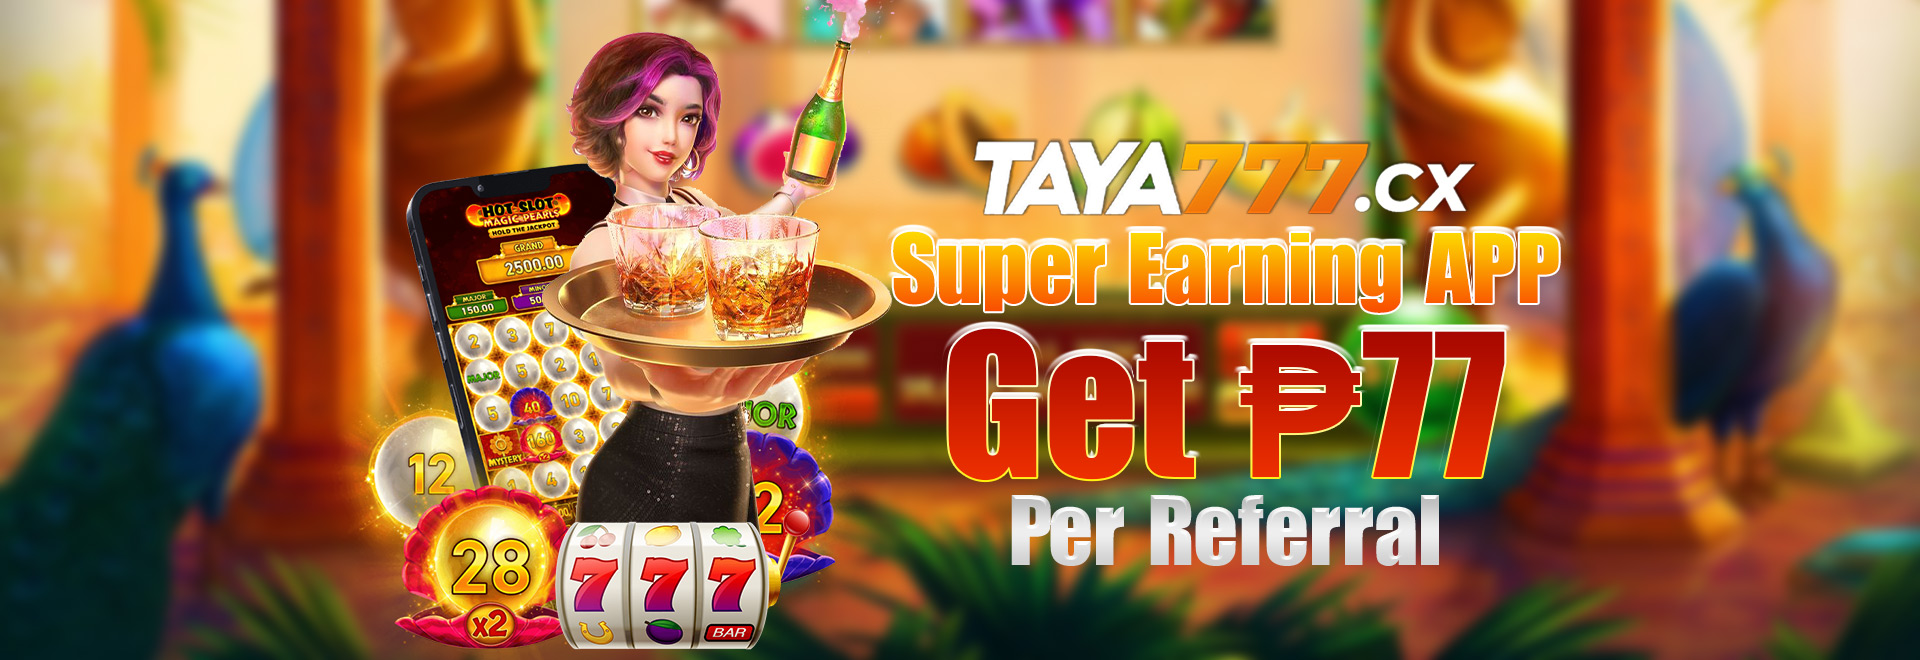 taya777 super earning app